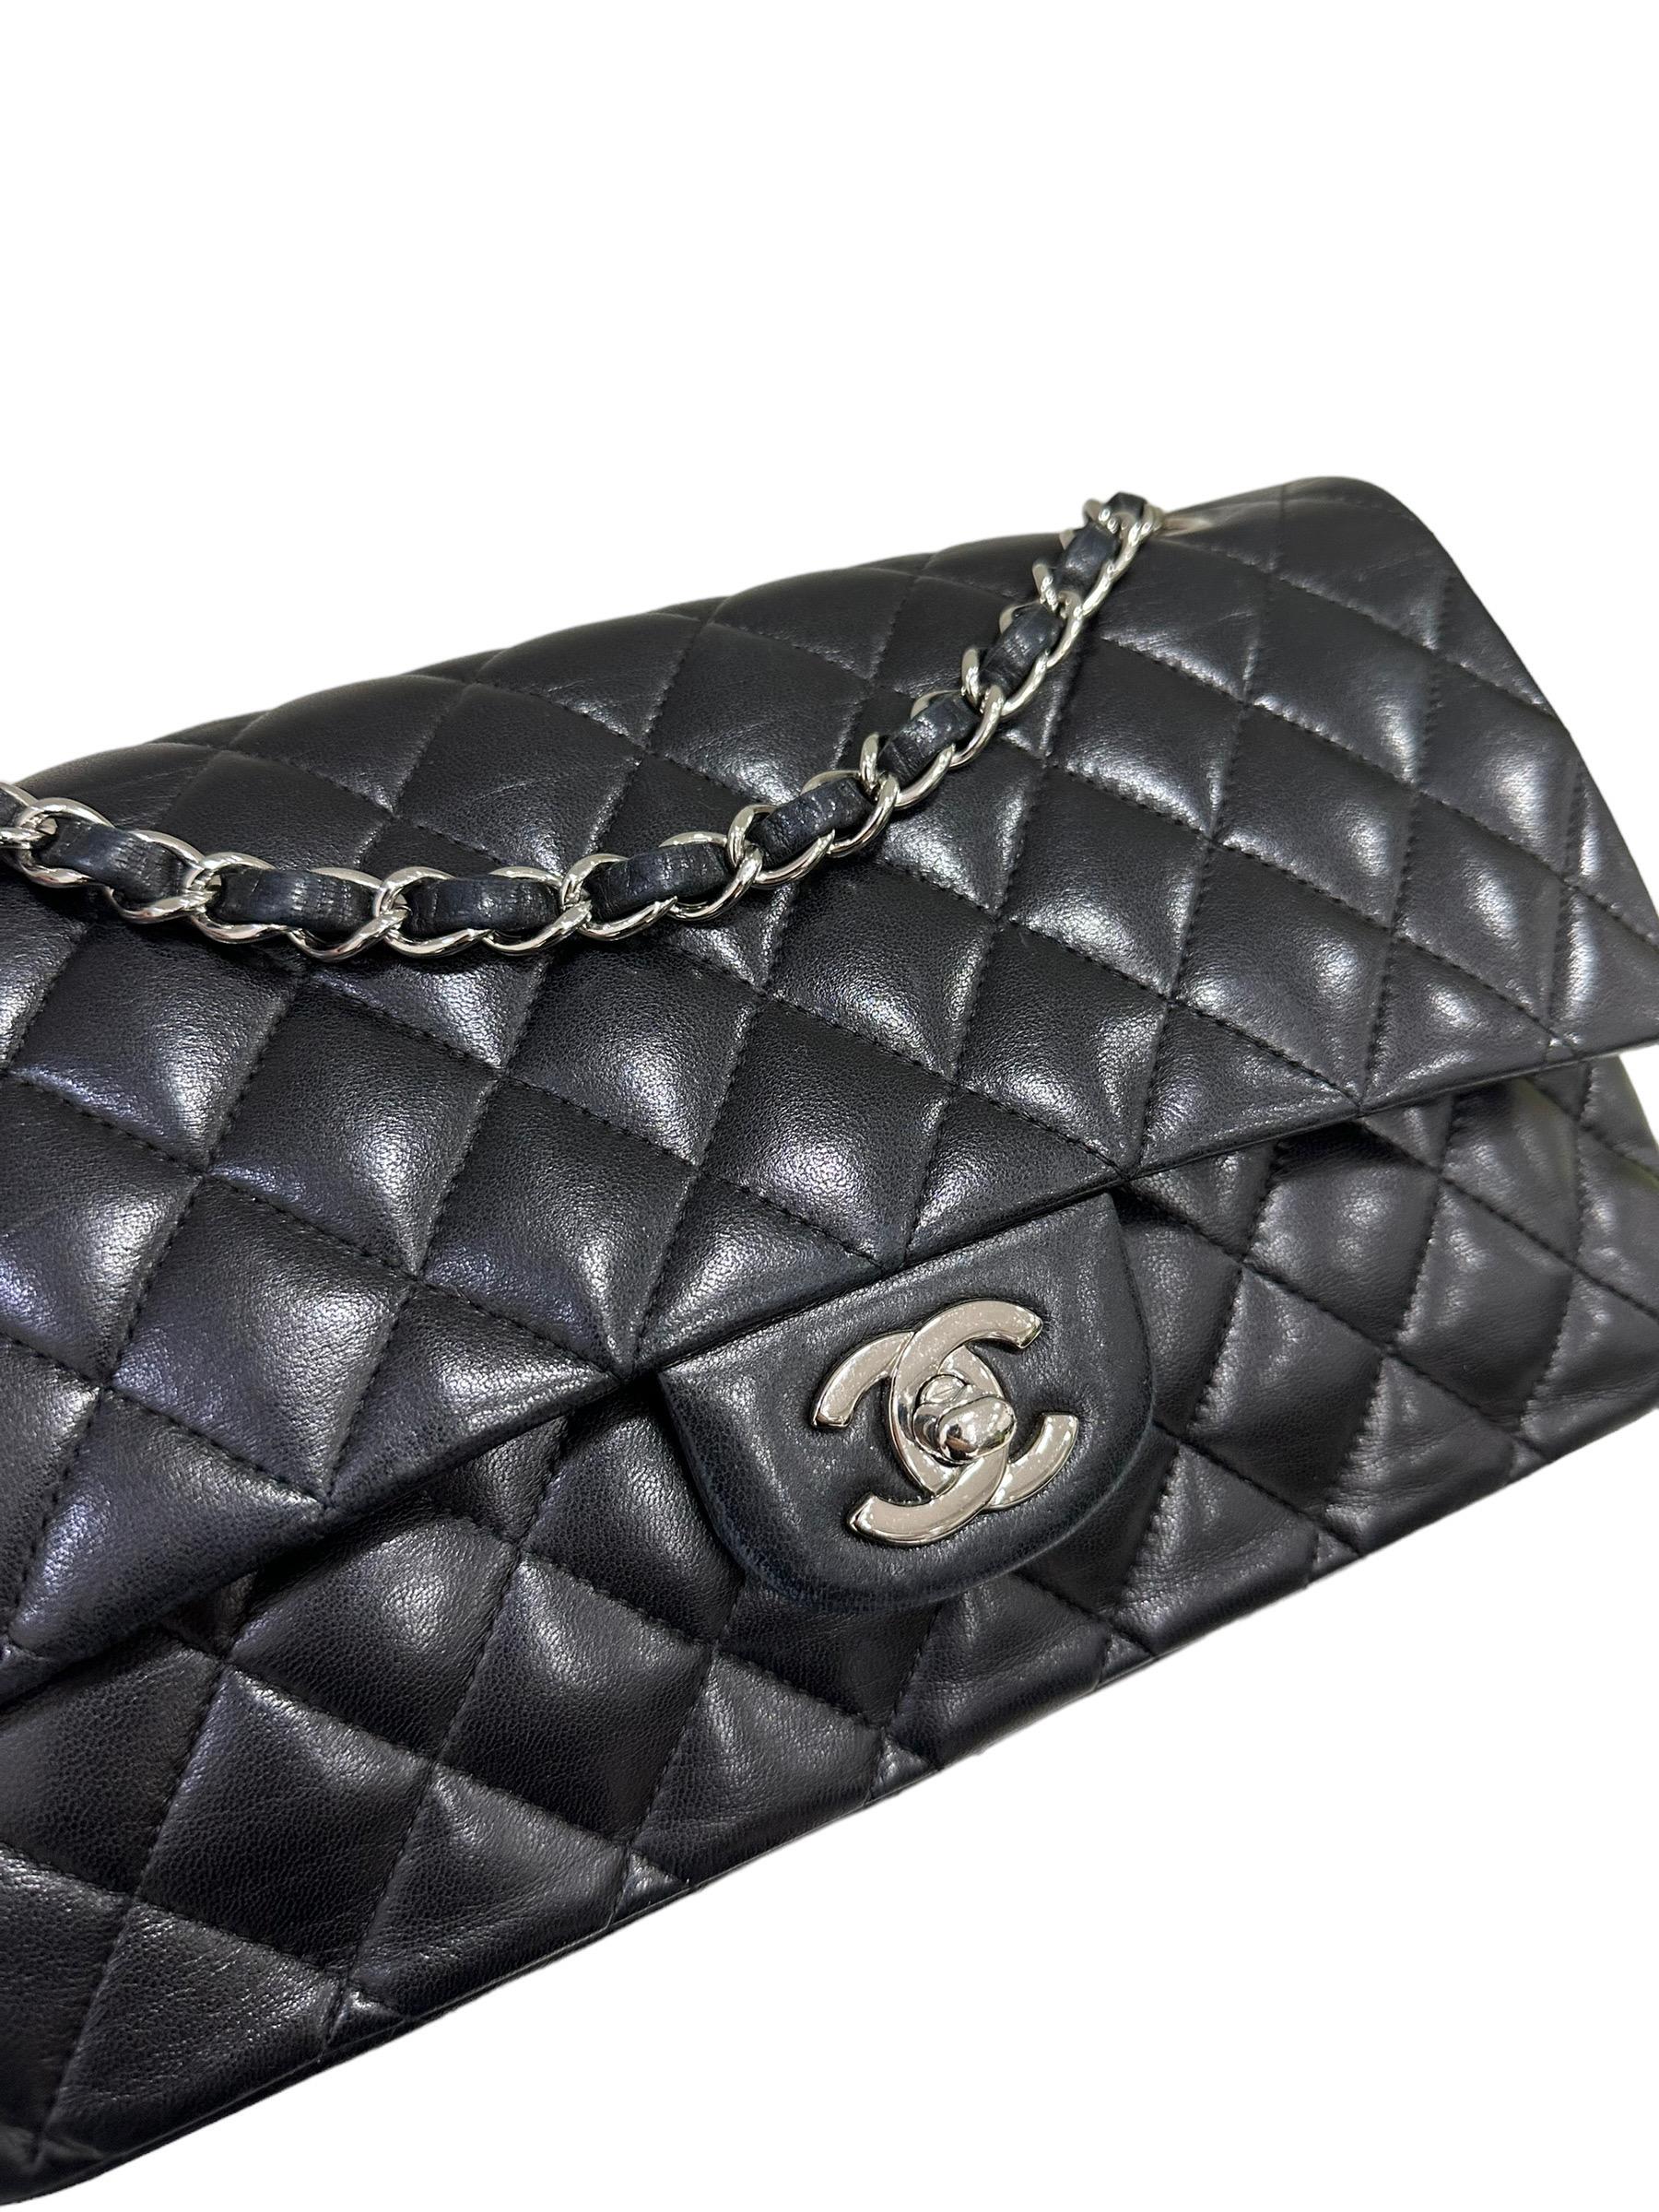 2008 Chanel. 2.55 Timeless Black Leather Shoulder Bag 1